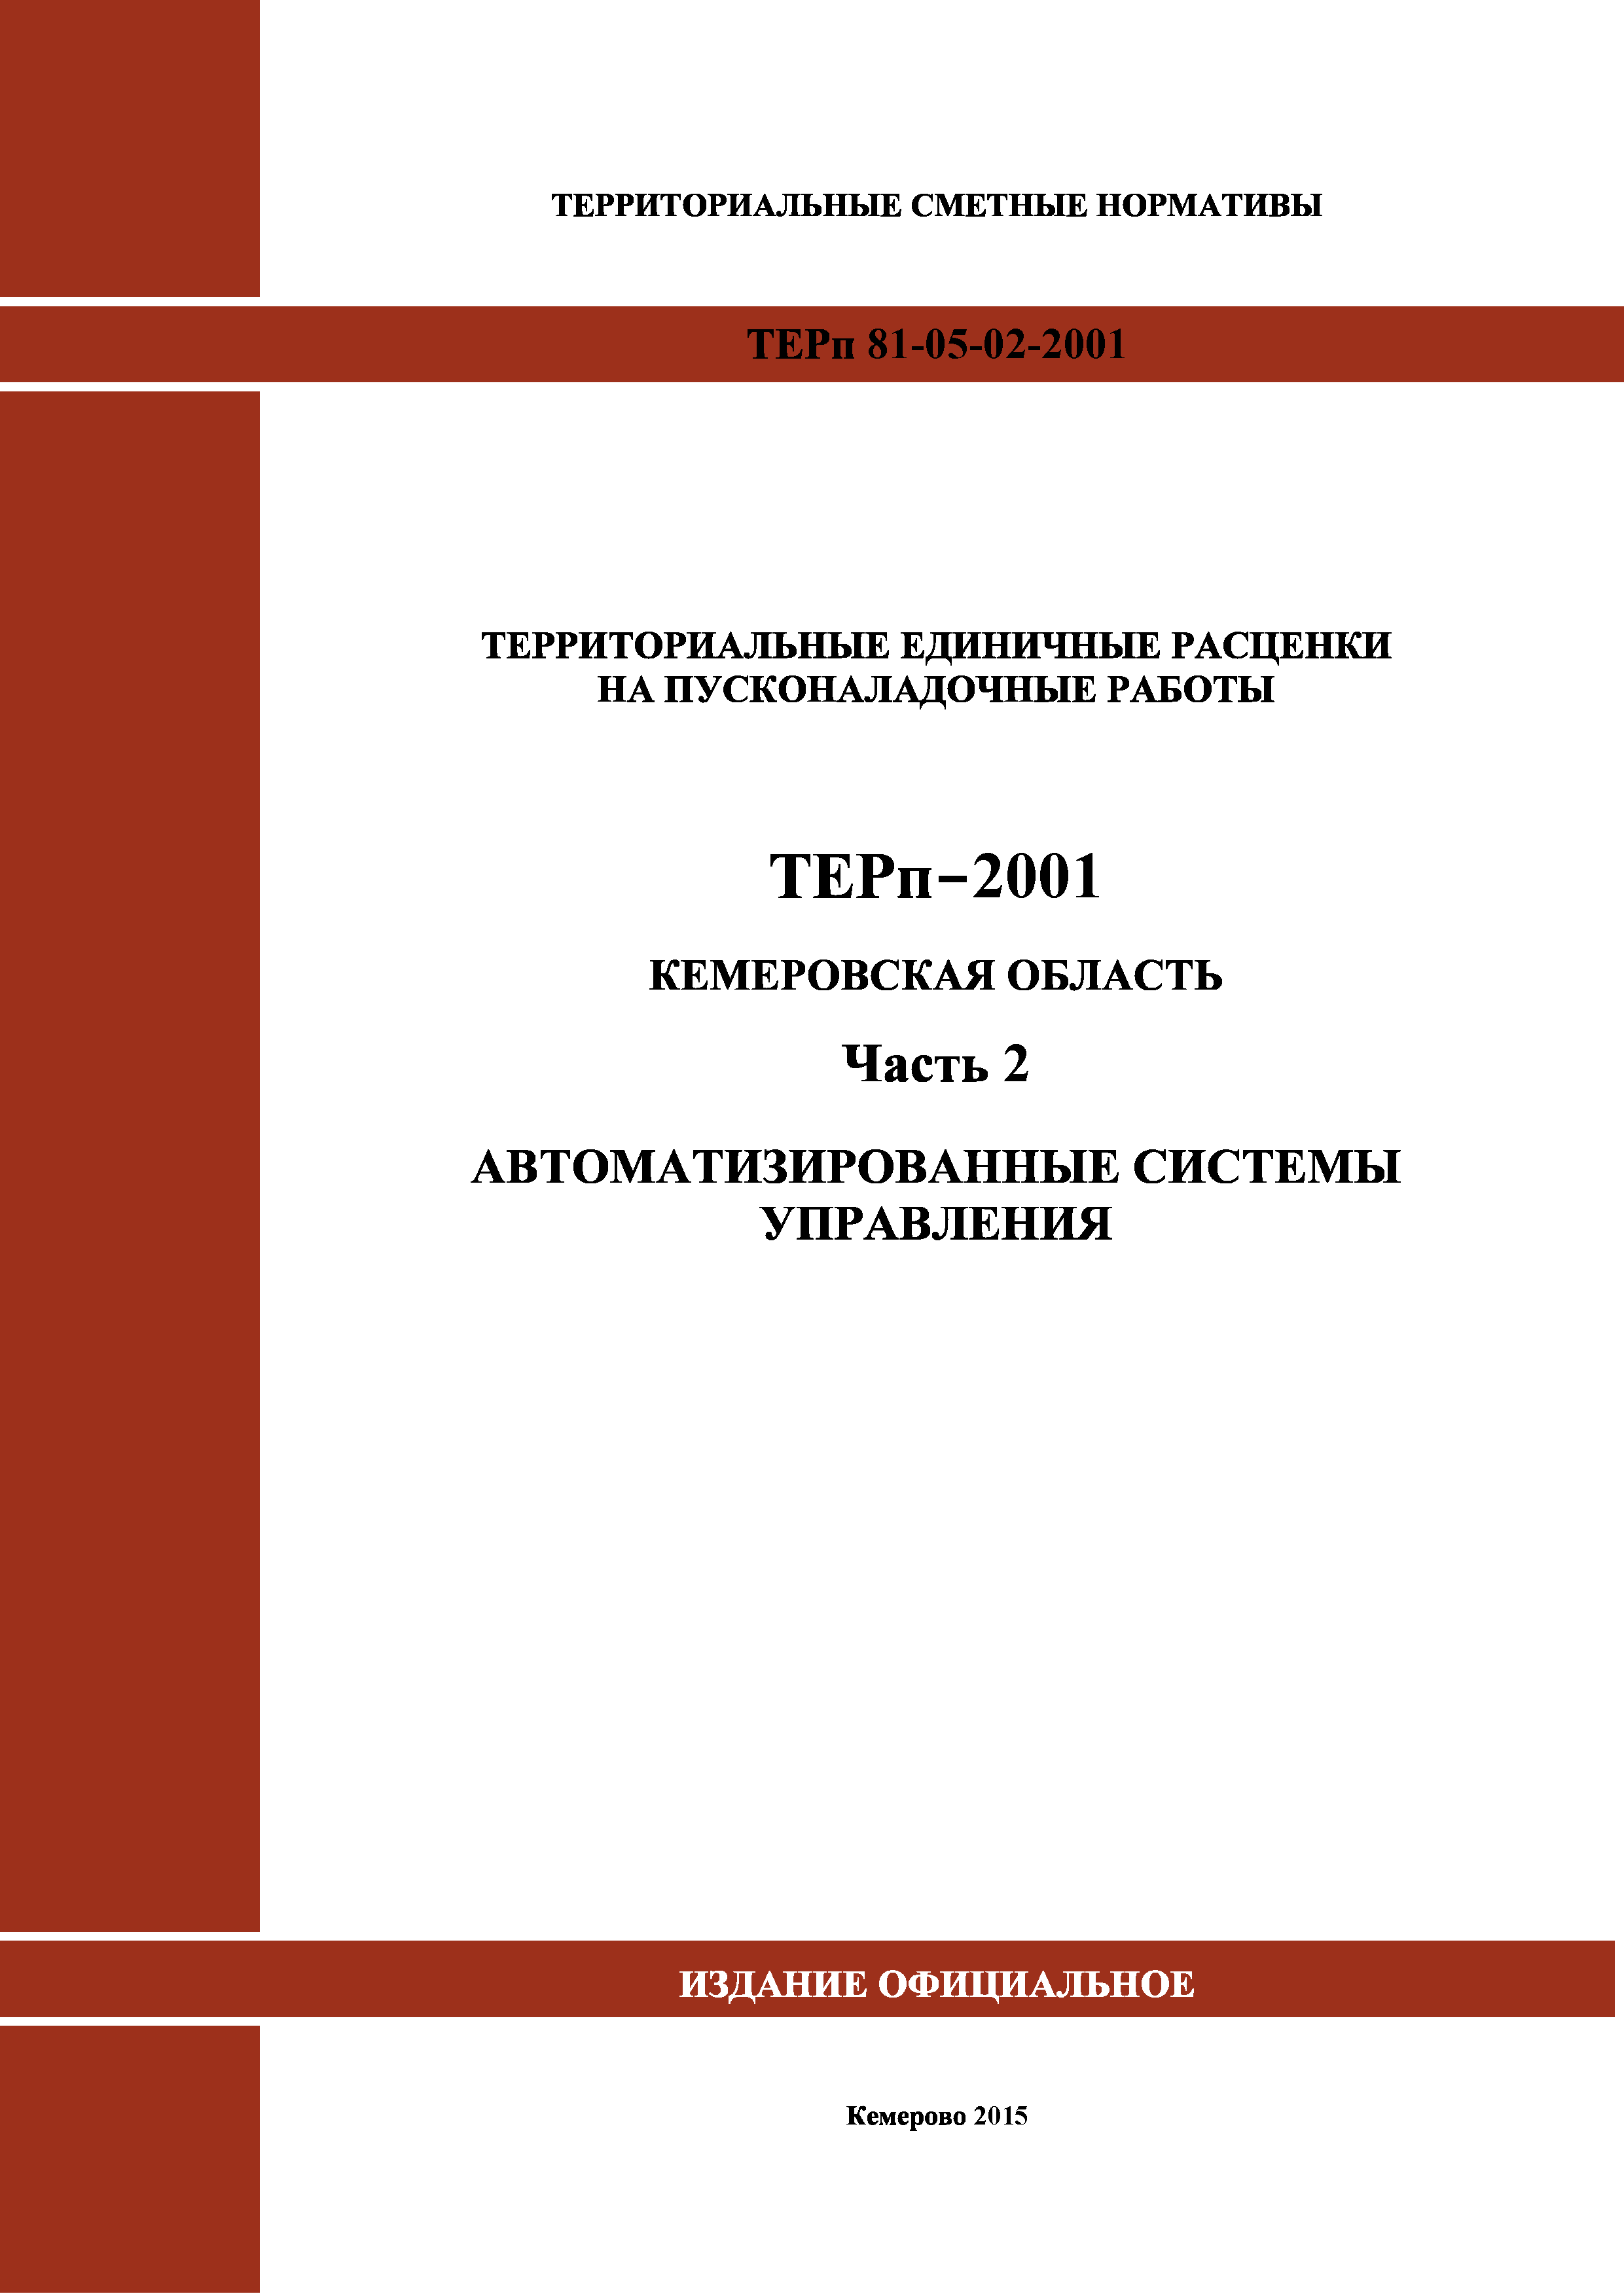 ТЕРп Кемеровская область 81-05-02-2001